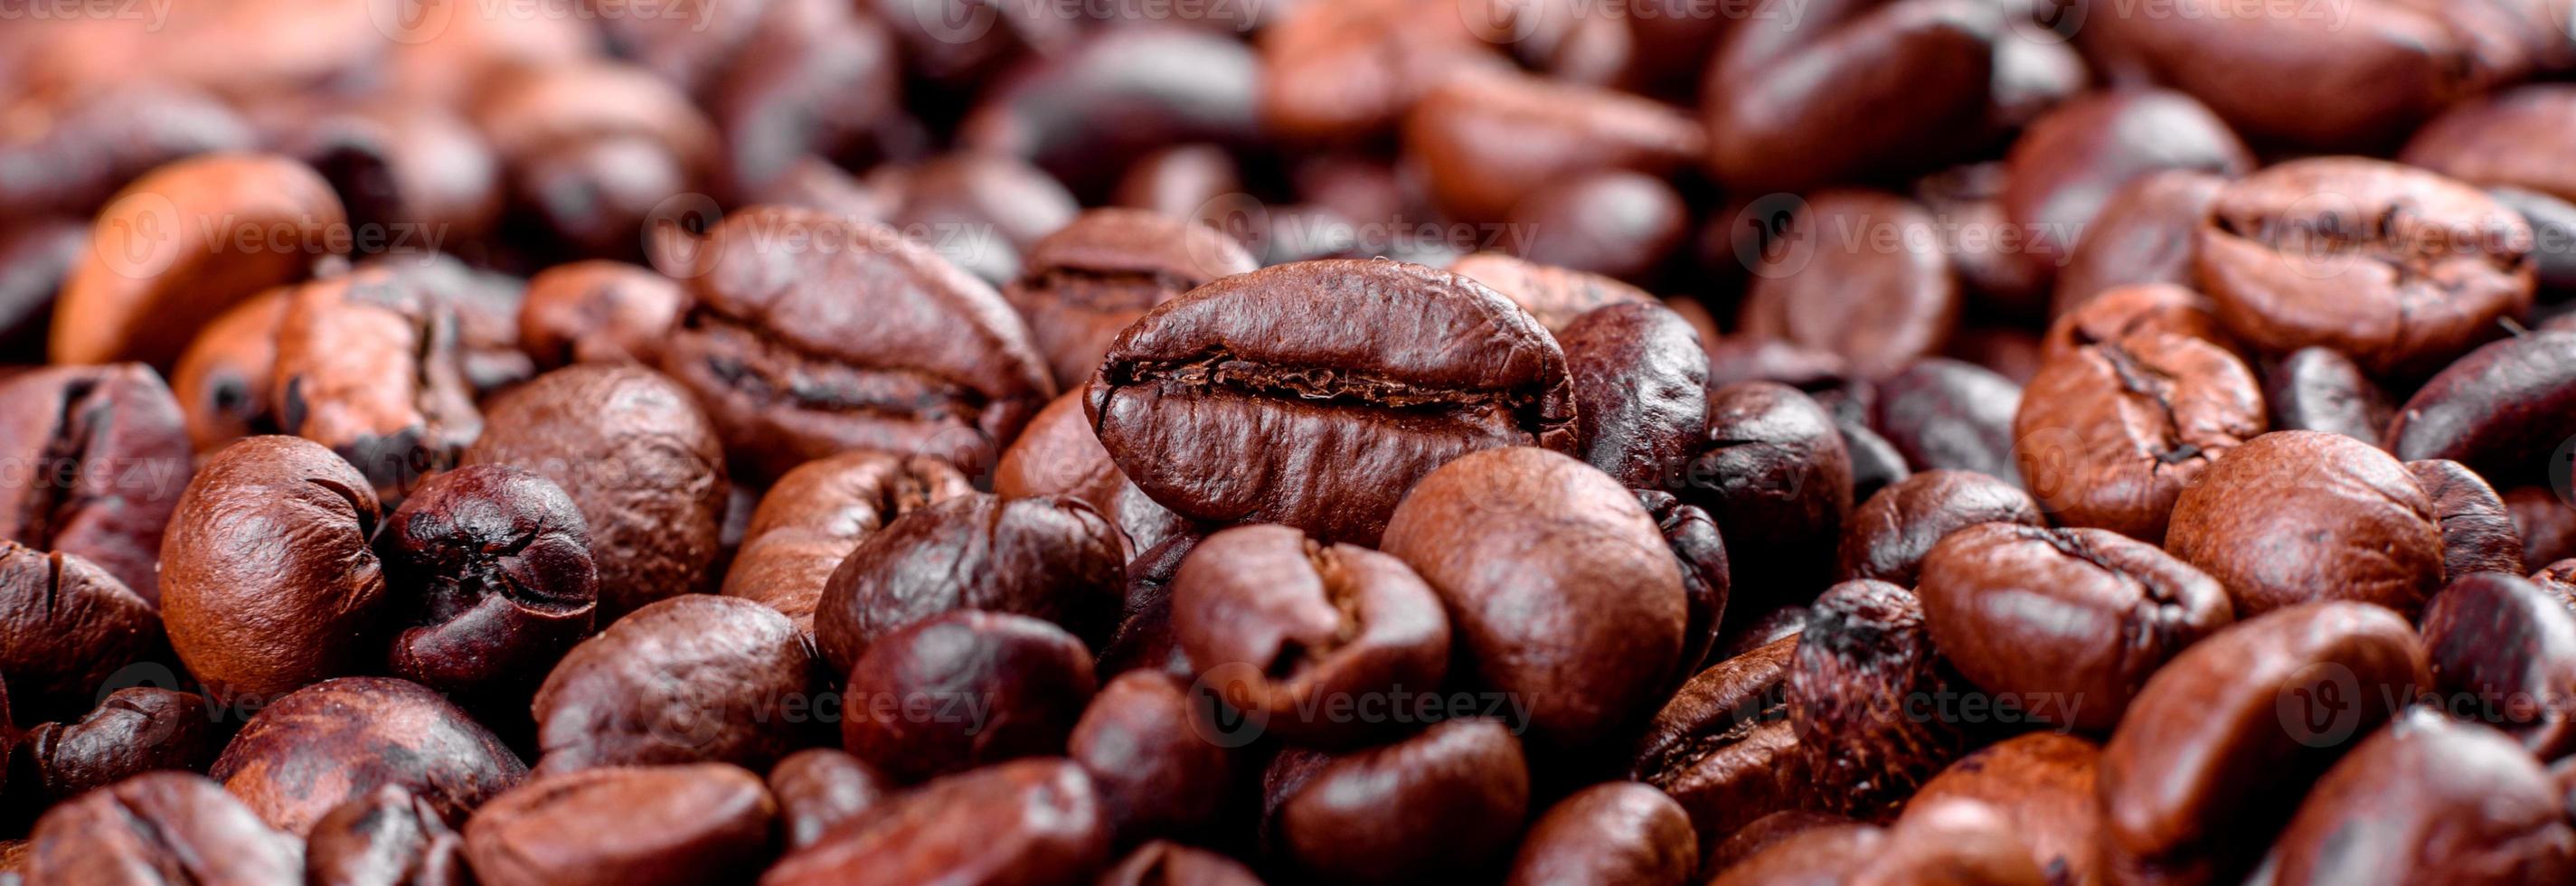 grains de café torréfié frais close-up sur un fond sombre photo